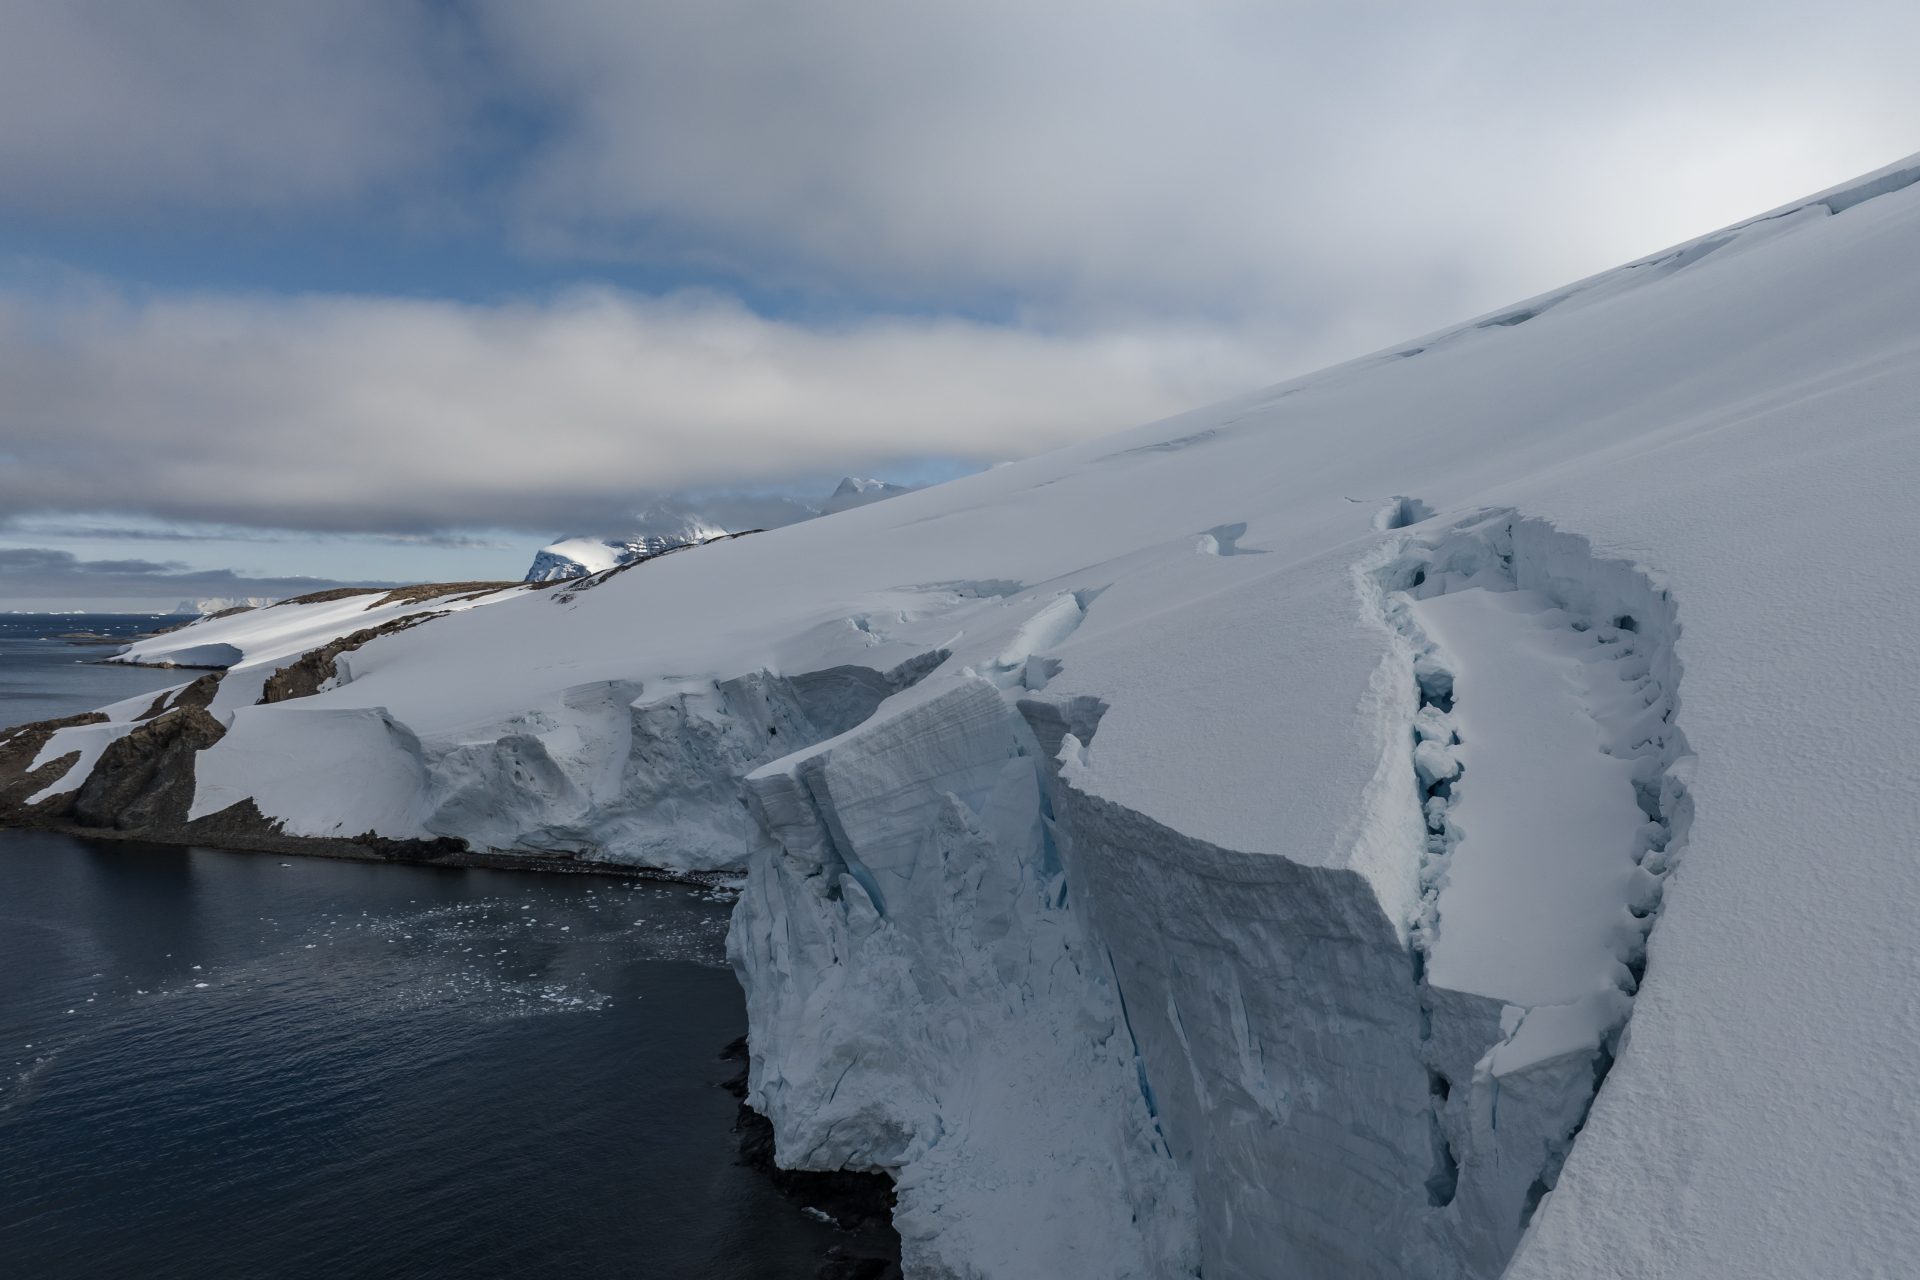 Protecting glaciers and creaitng habitats 